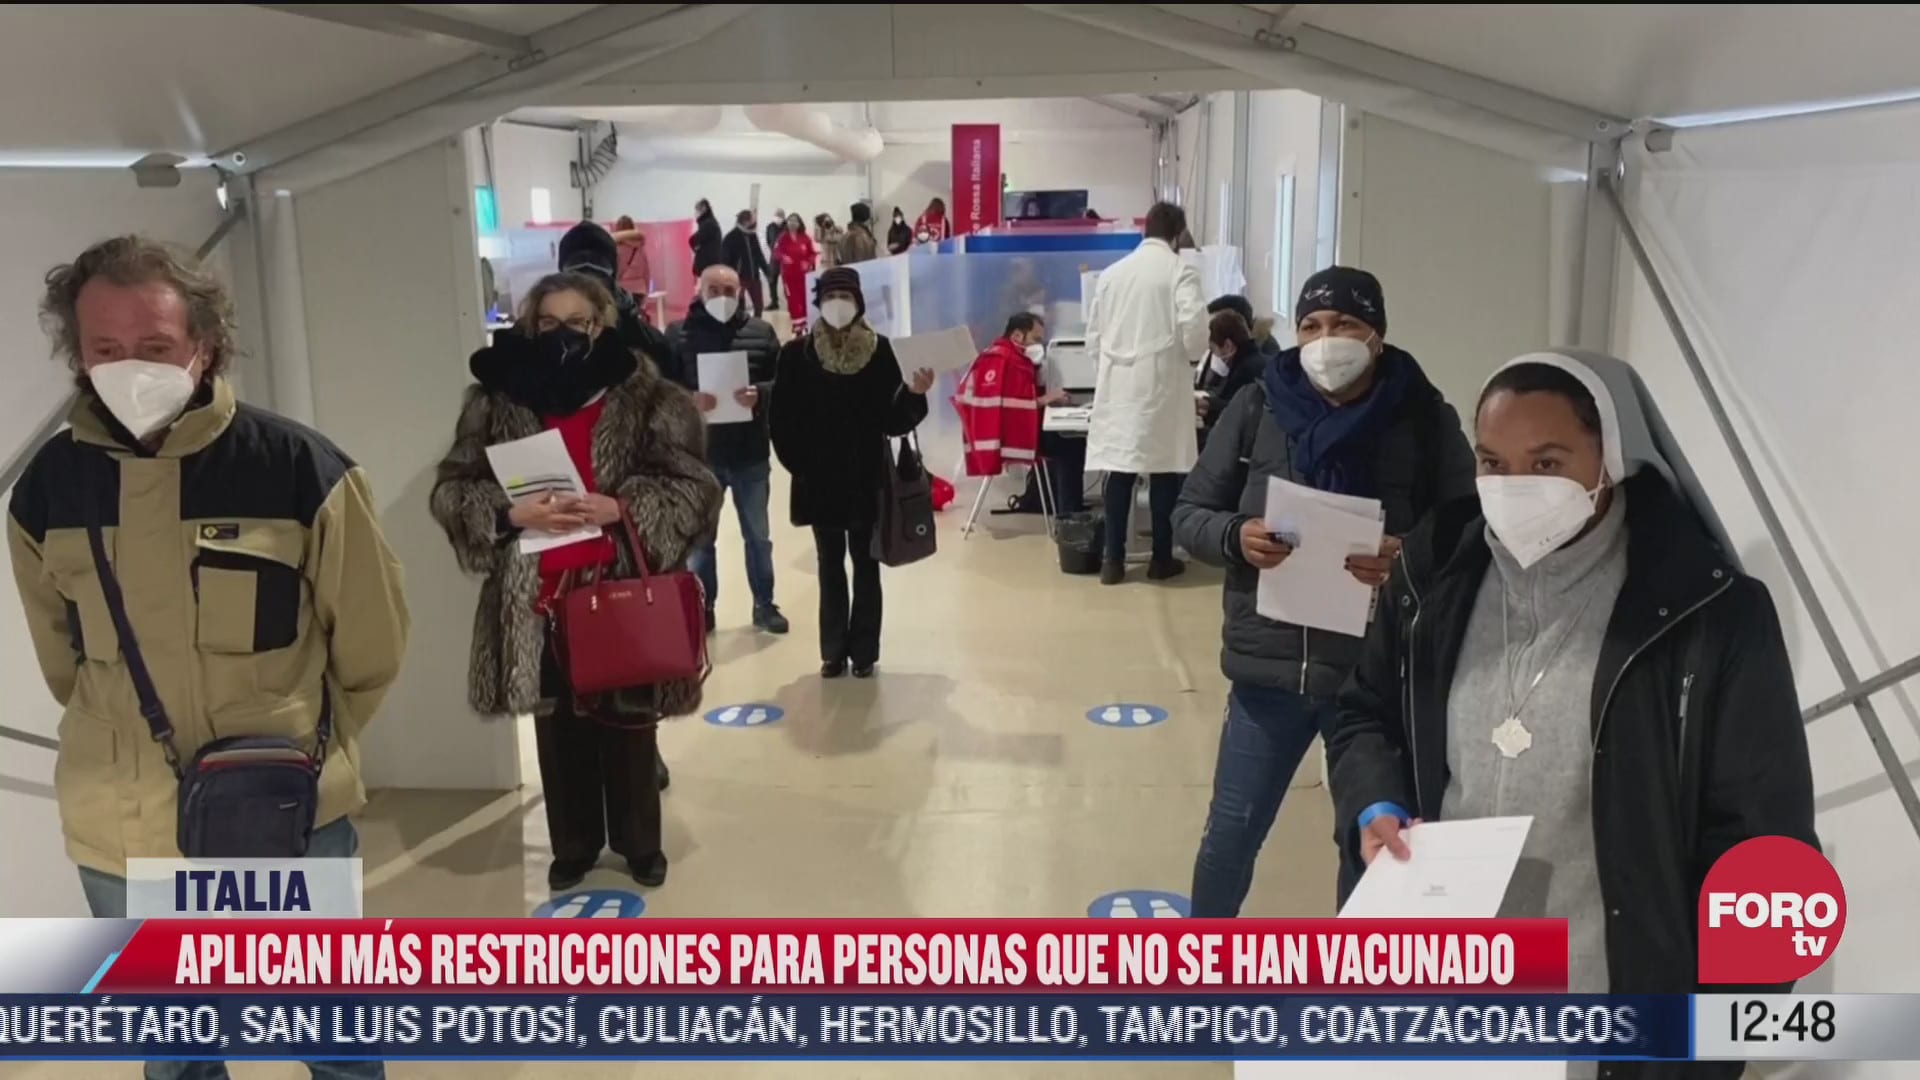 italia aplicara mas restricciones a personas no vacunadas